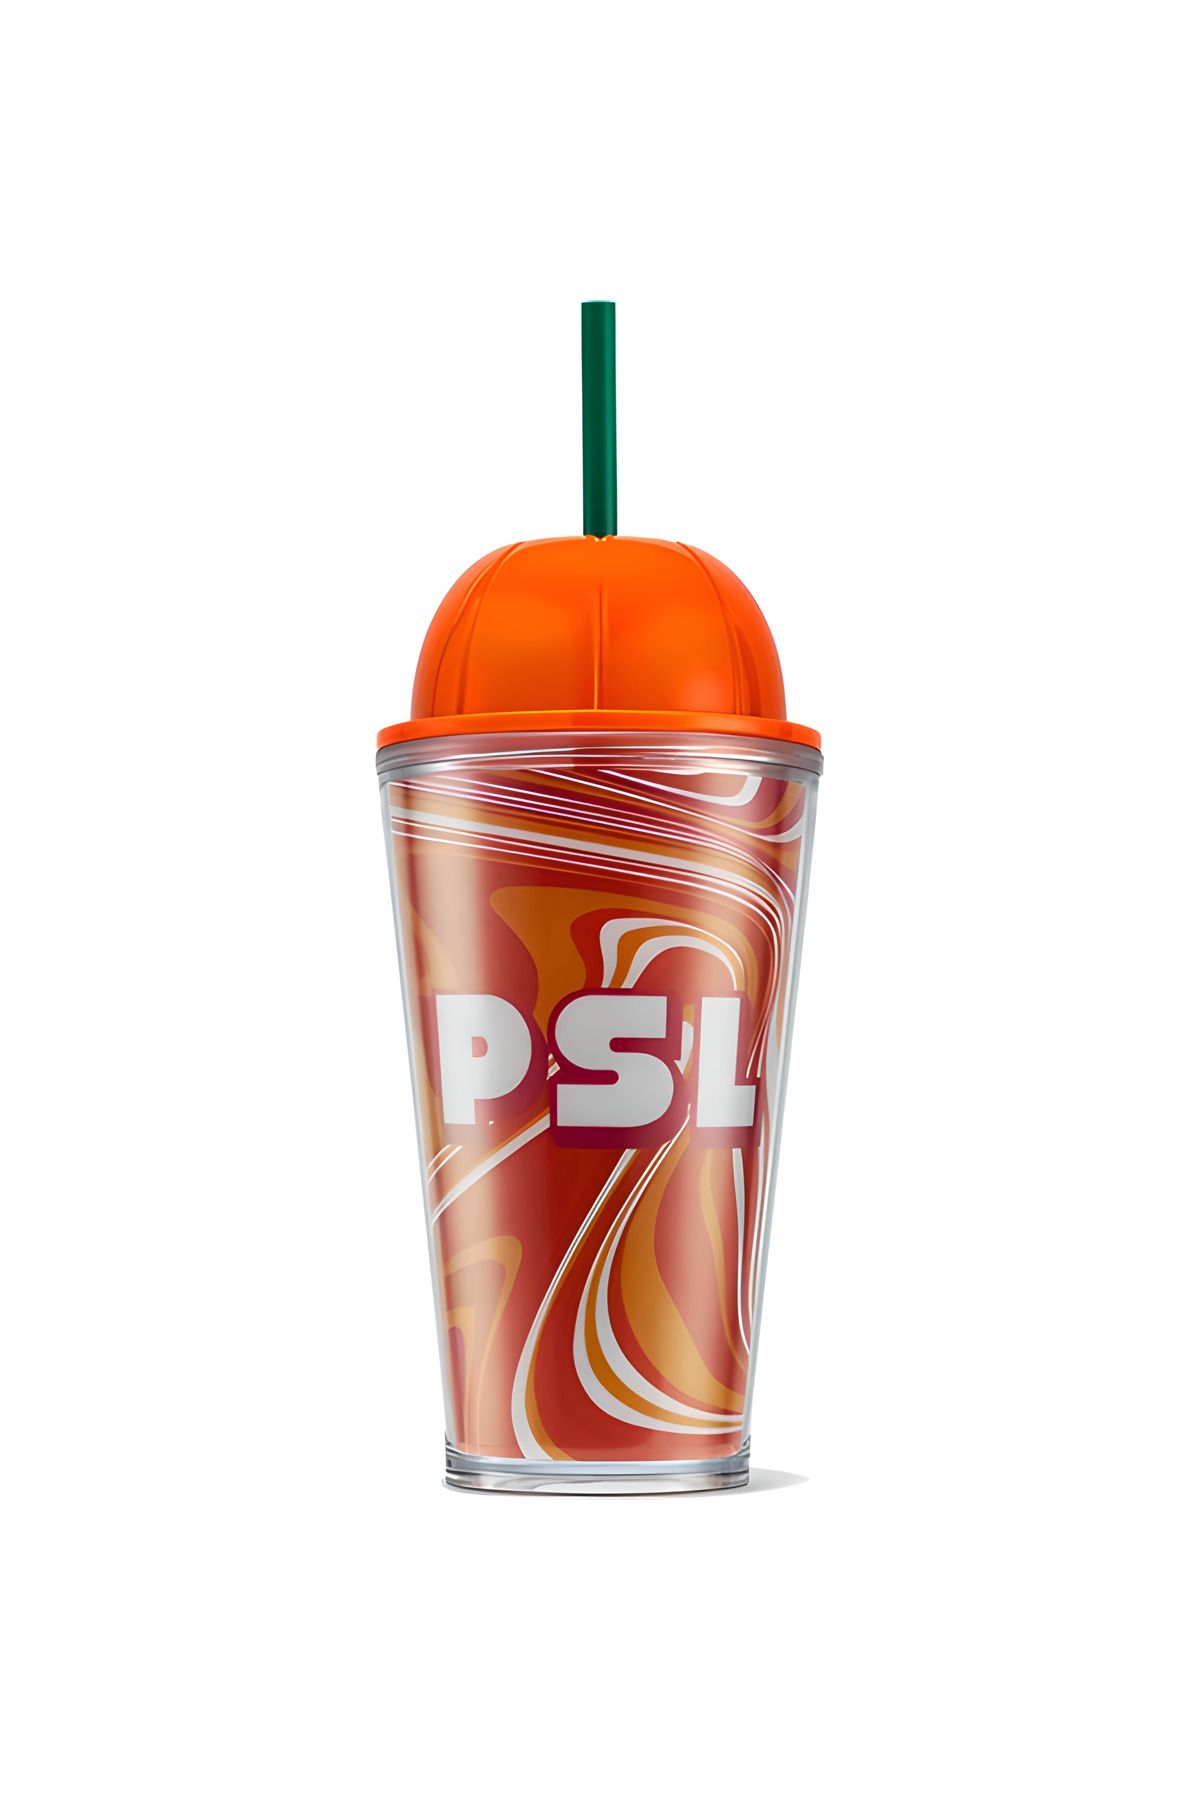 Starbucks ® Psl Plastik Soğuk Içecek Bardağı - Turuncu - 473 Ml